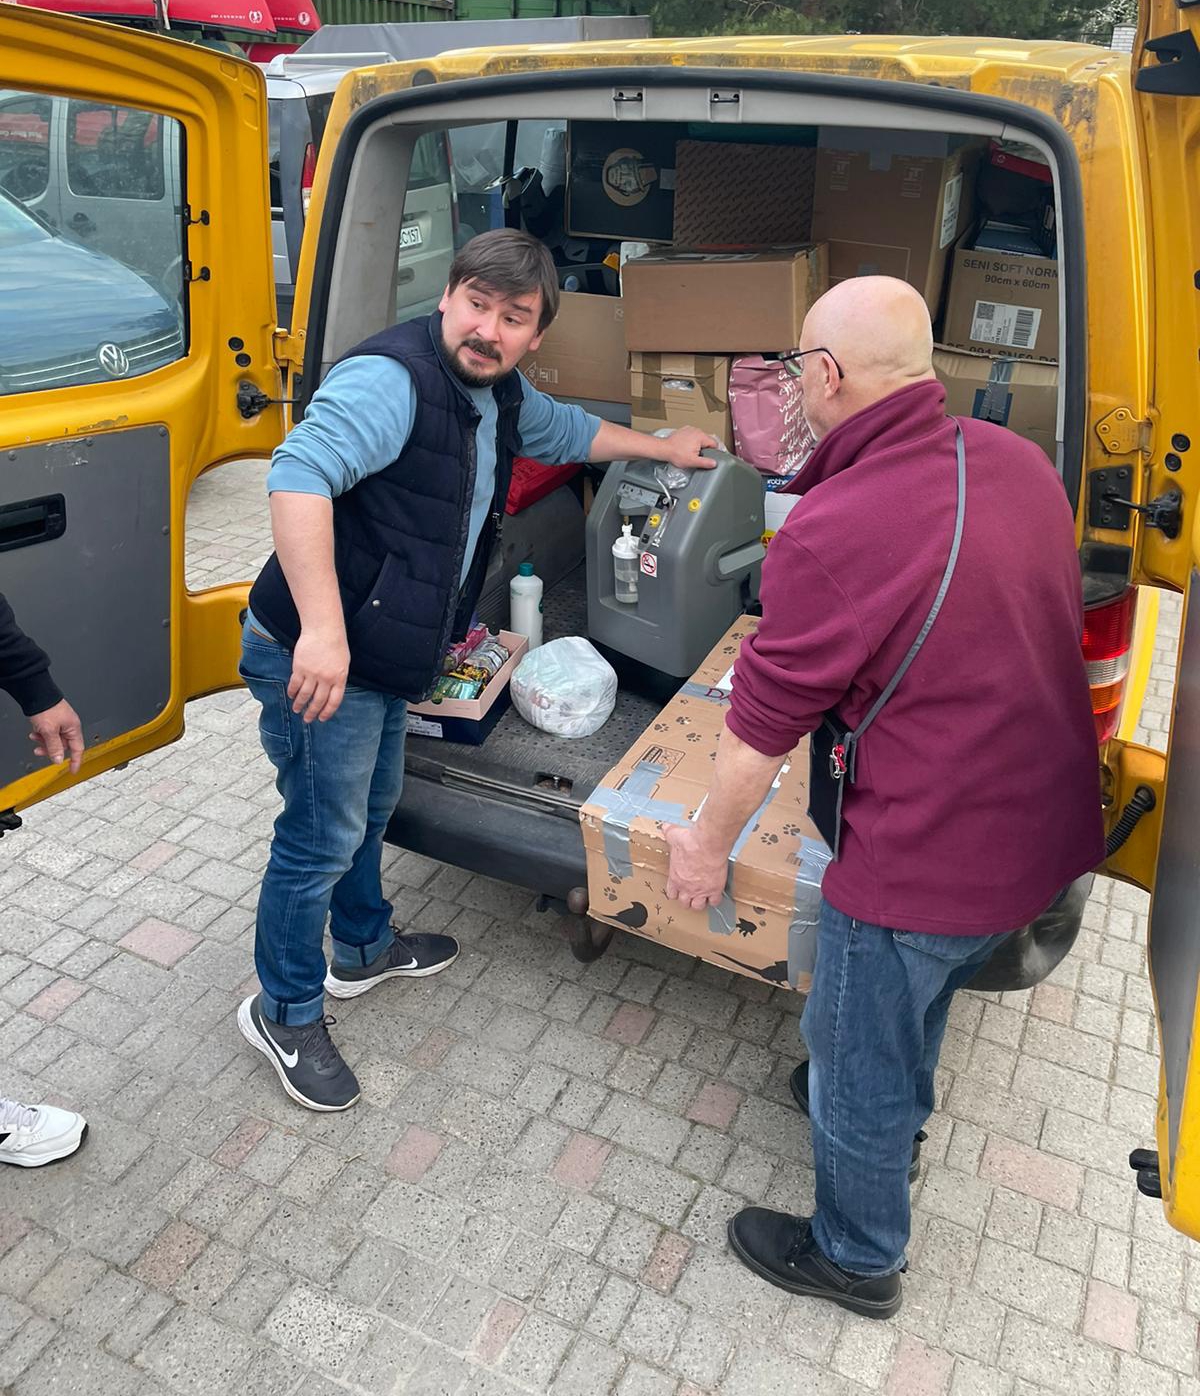 Vereinsmitglied unterstützt Hilfstransport des Vereins Ukraine Hilfe Worms